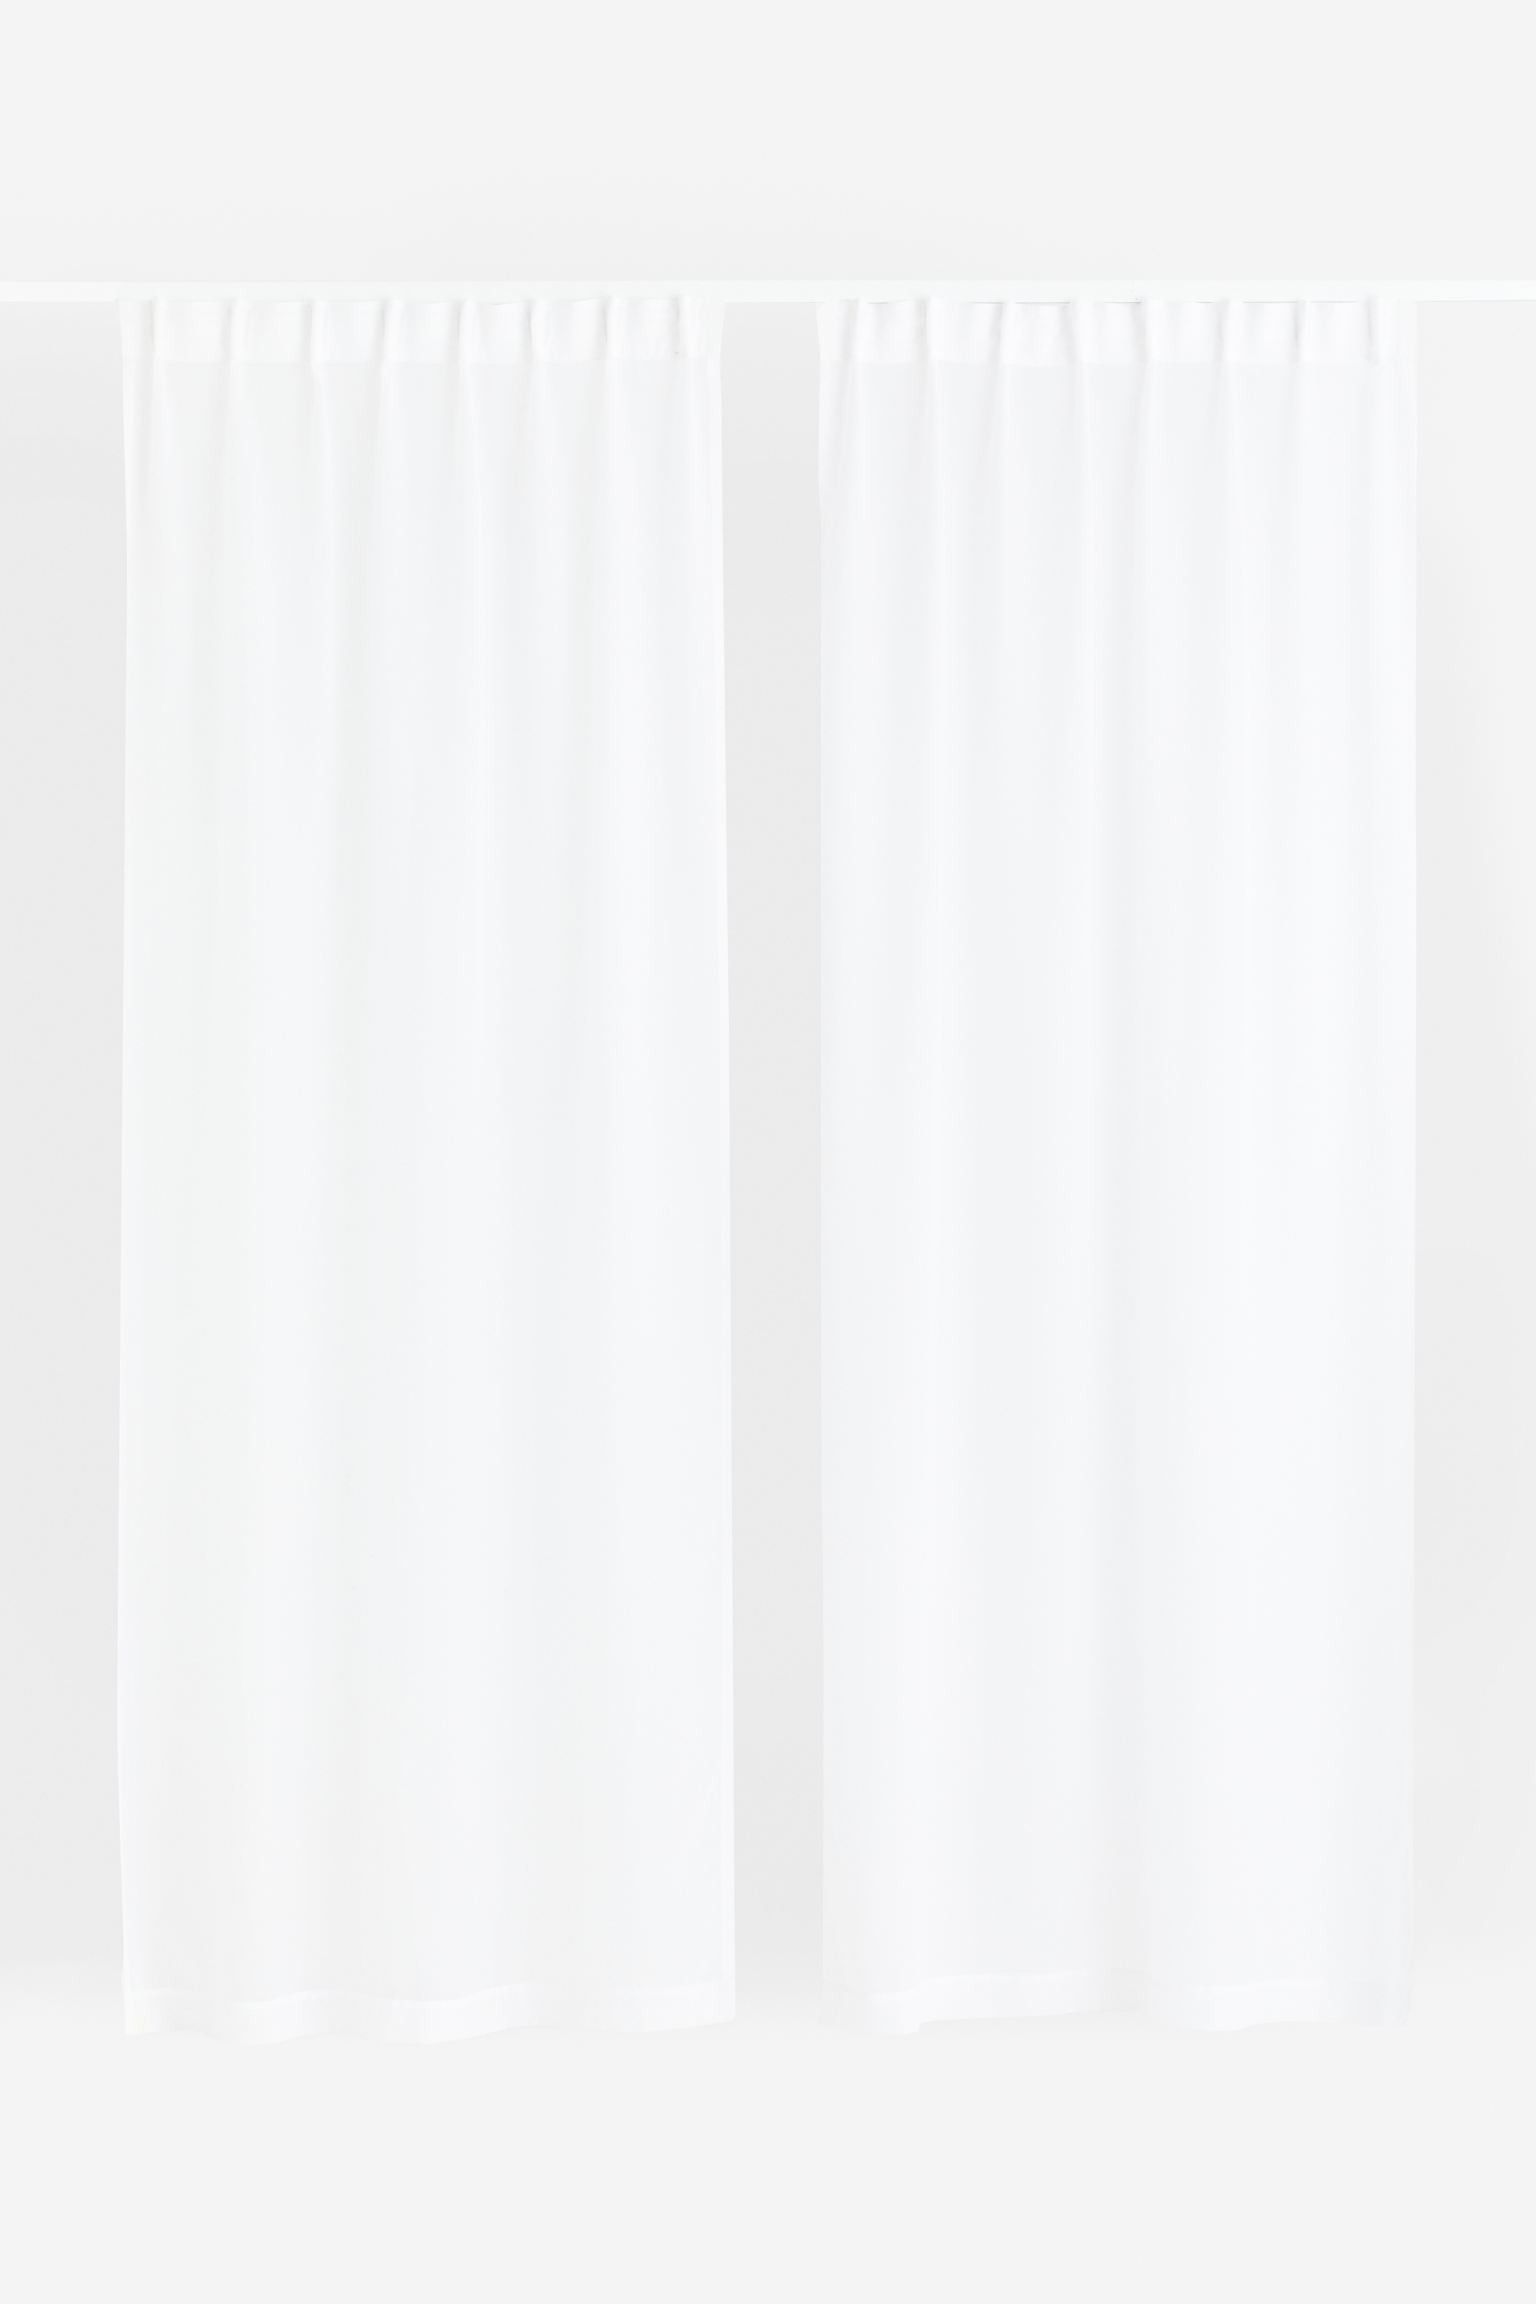 H&M Home Прозора штора, 2 шт., Білий, 150x300 1138507001 | 1138507001